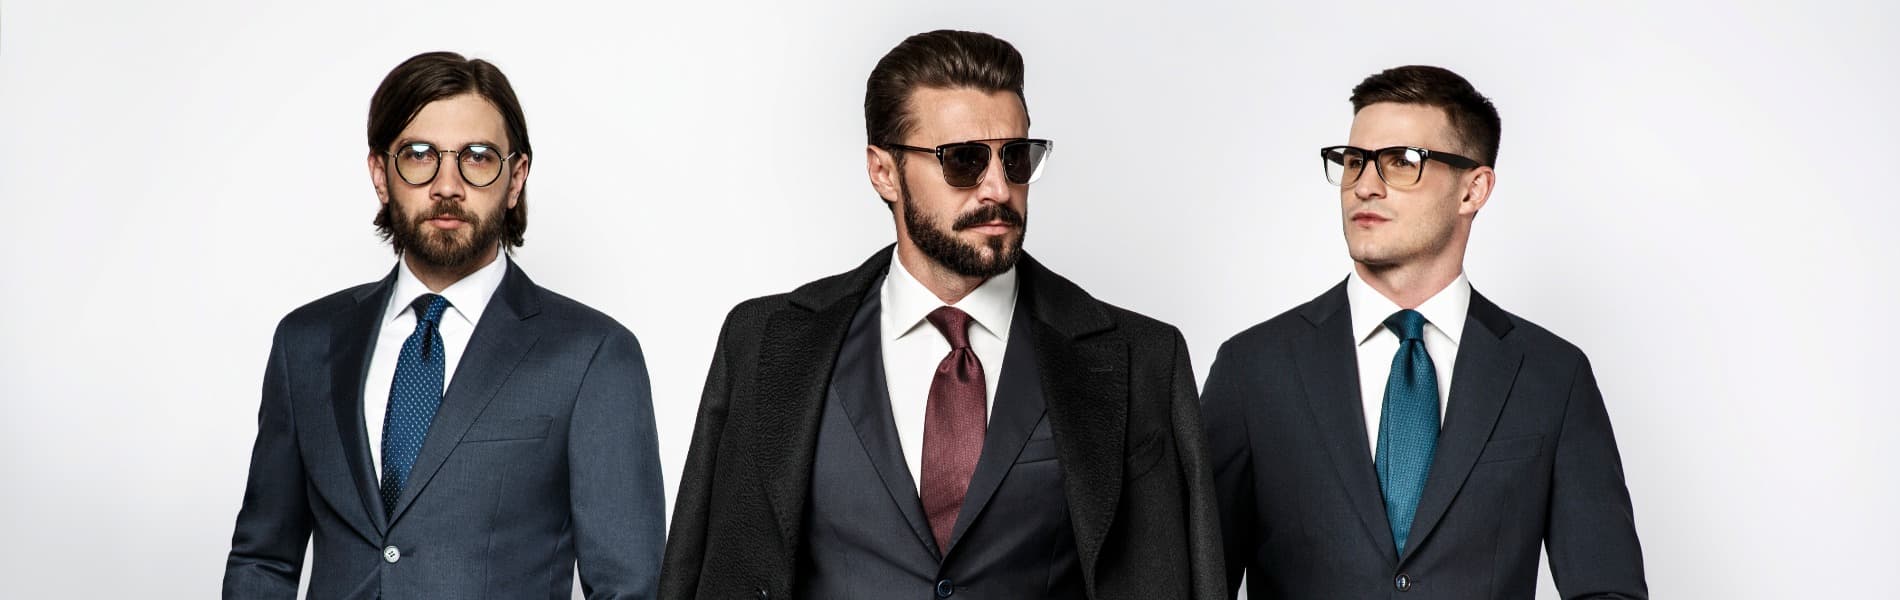 Образ делового мужчины: внешний вид и манеры